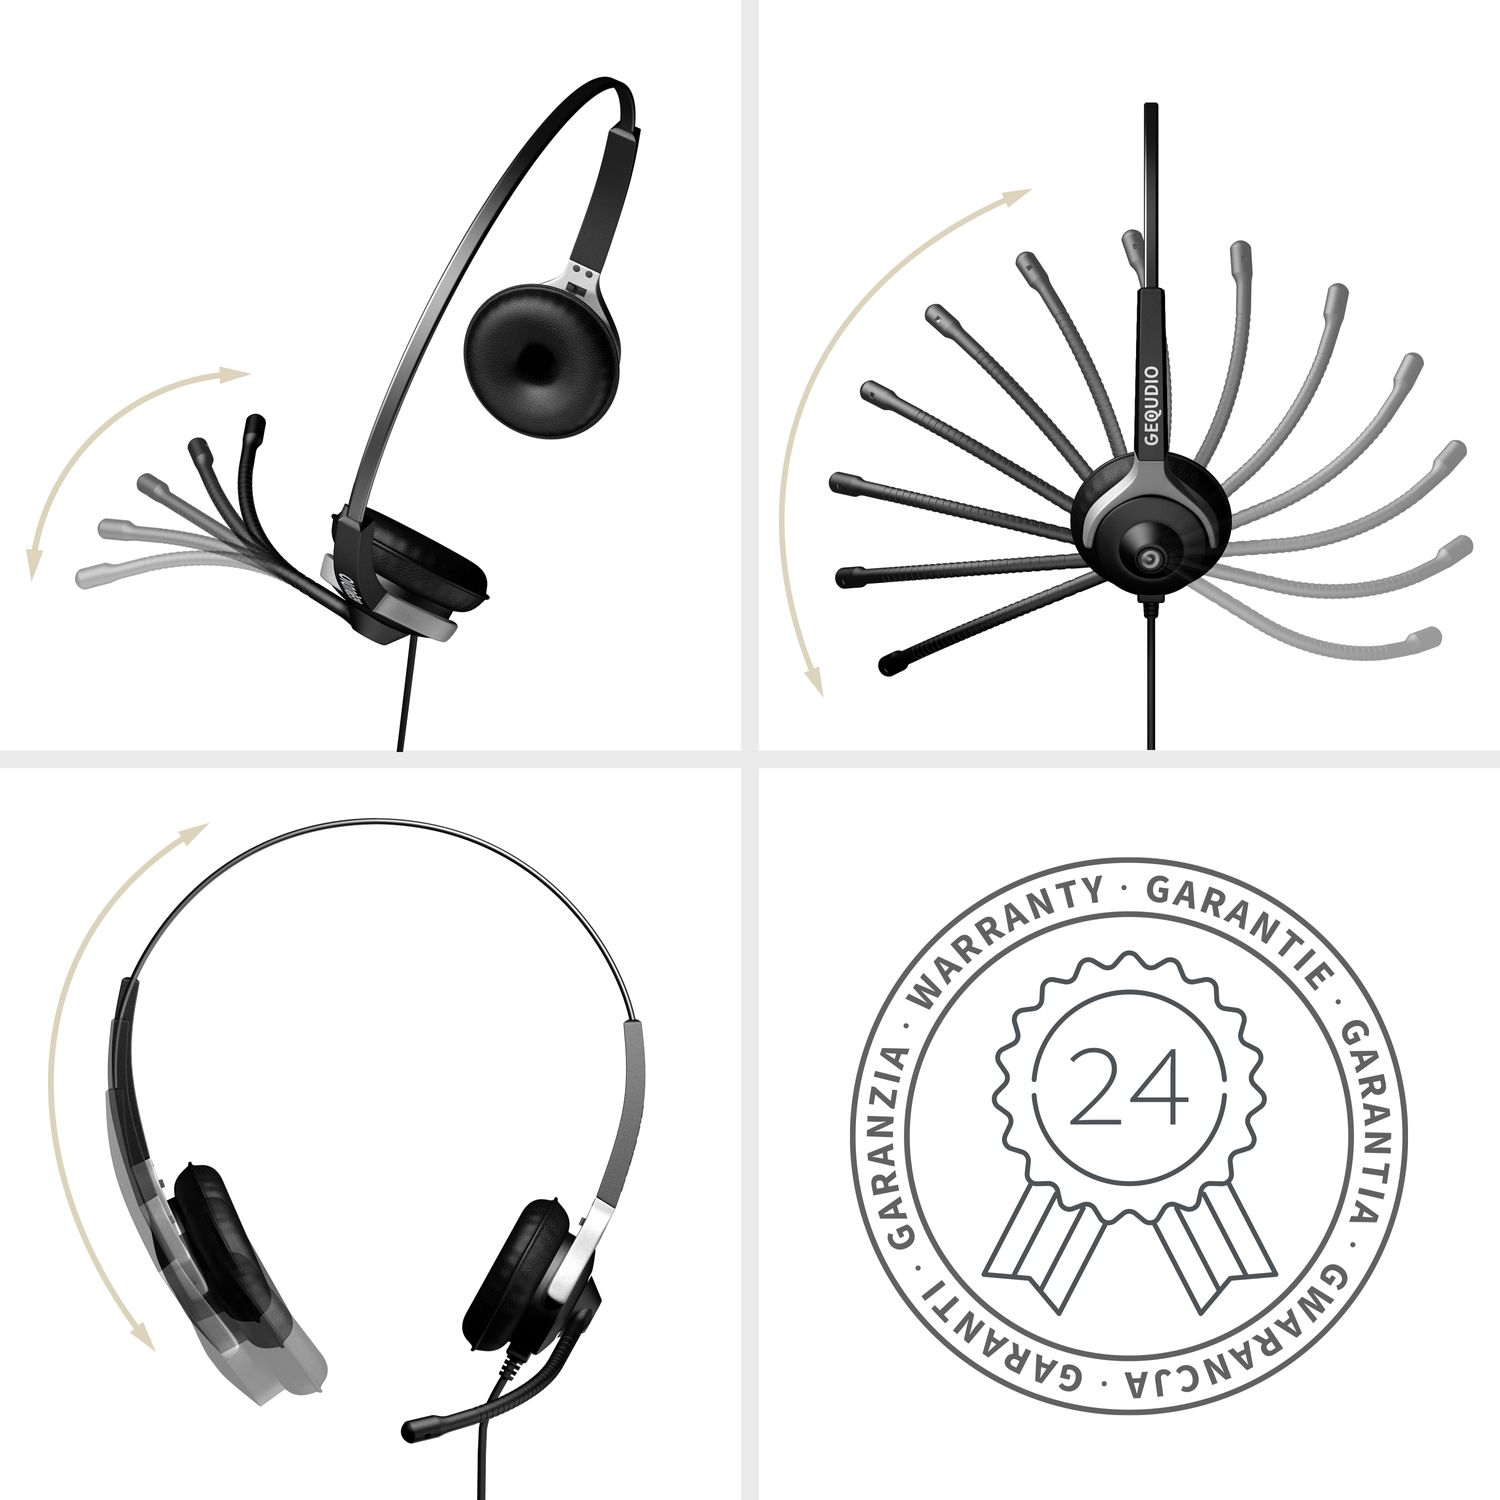 GEQUDIO Headset 2-Ohr Headset für On-ear Kabel, Mitel/Aastra/Poly/Gigaset-RJ mit Schwarz